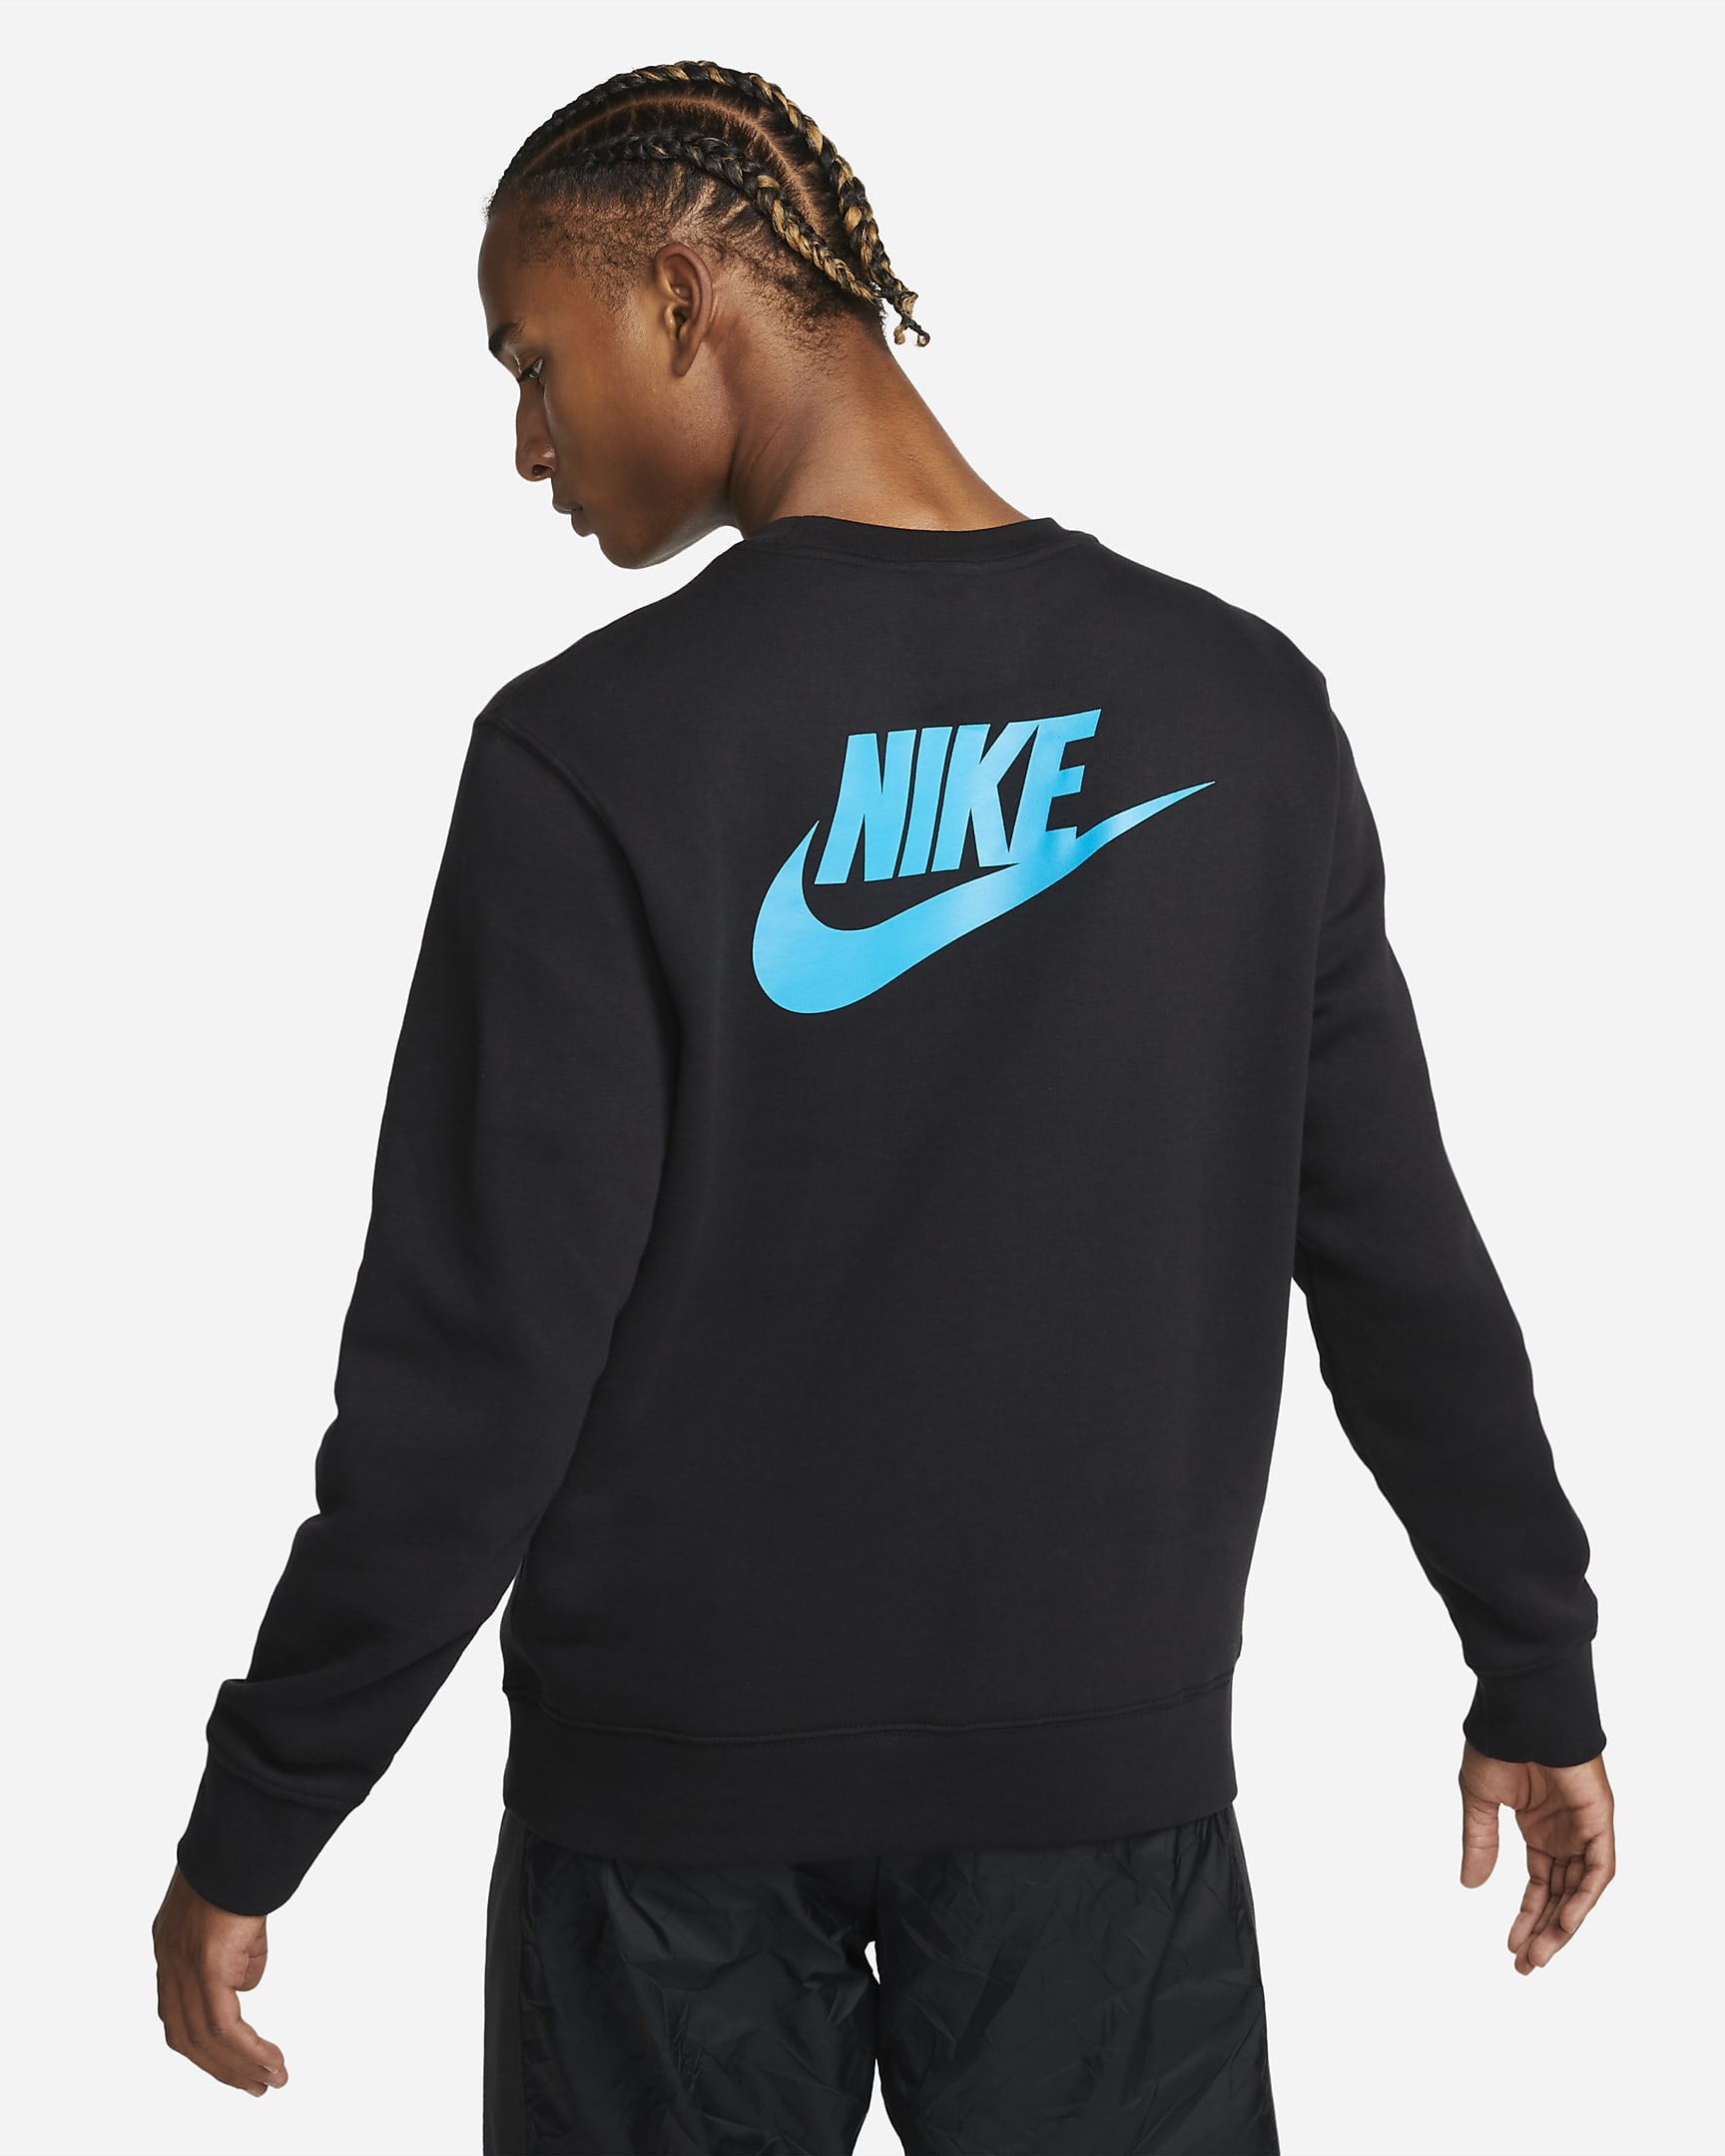 Nike Sportswear Standard Issue Men's Crew-Neck Sweatshirt. Nike LU